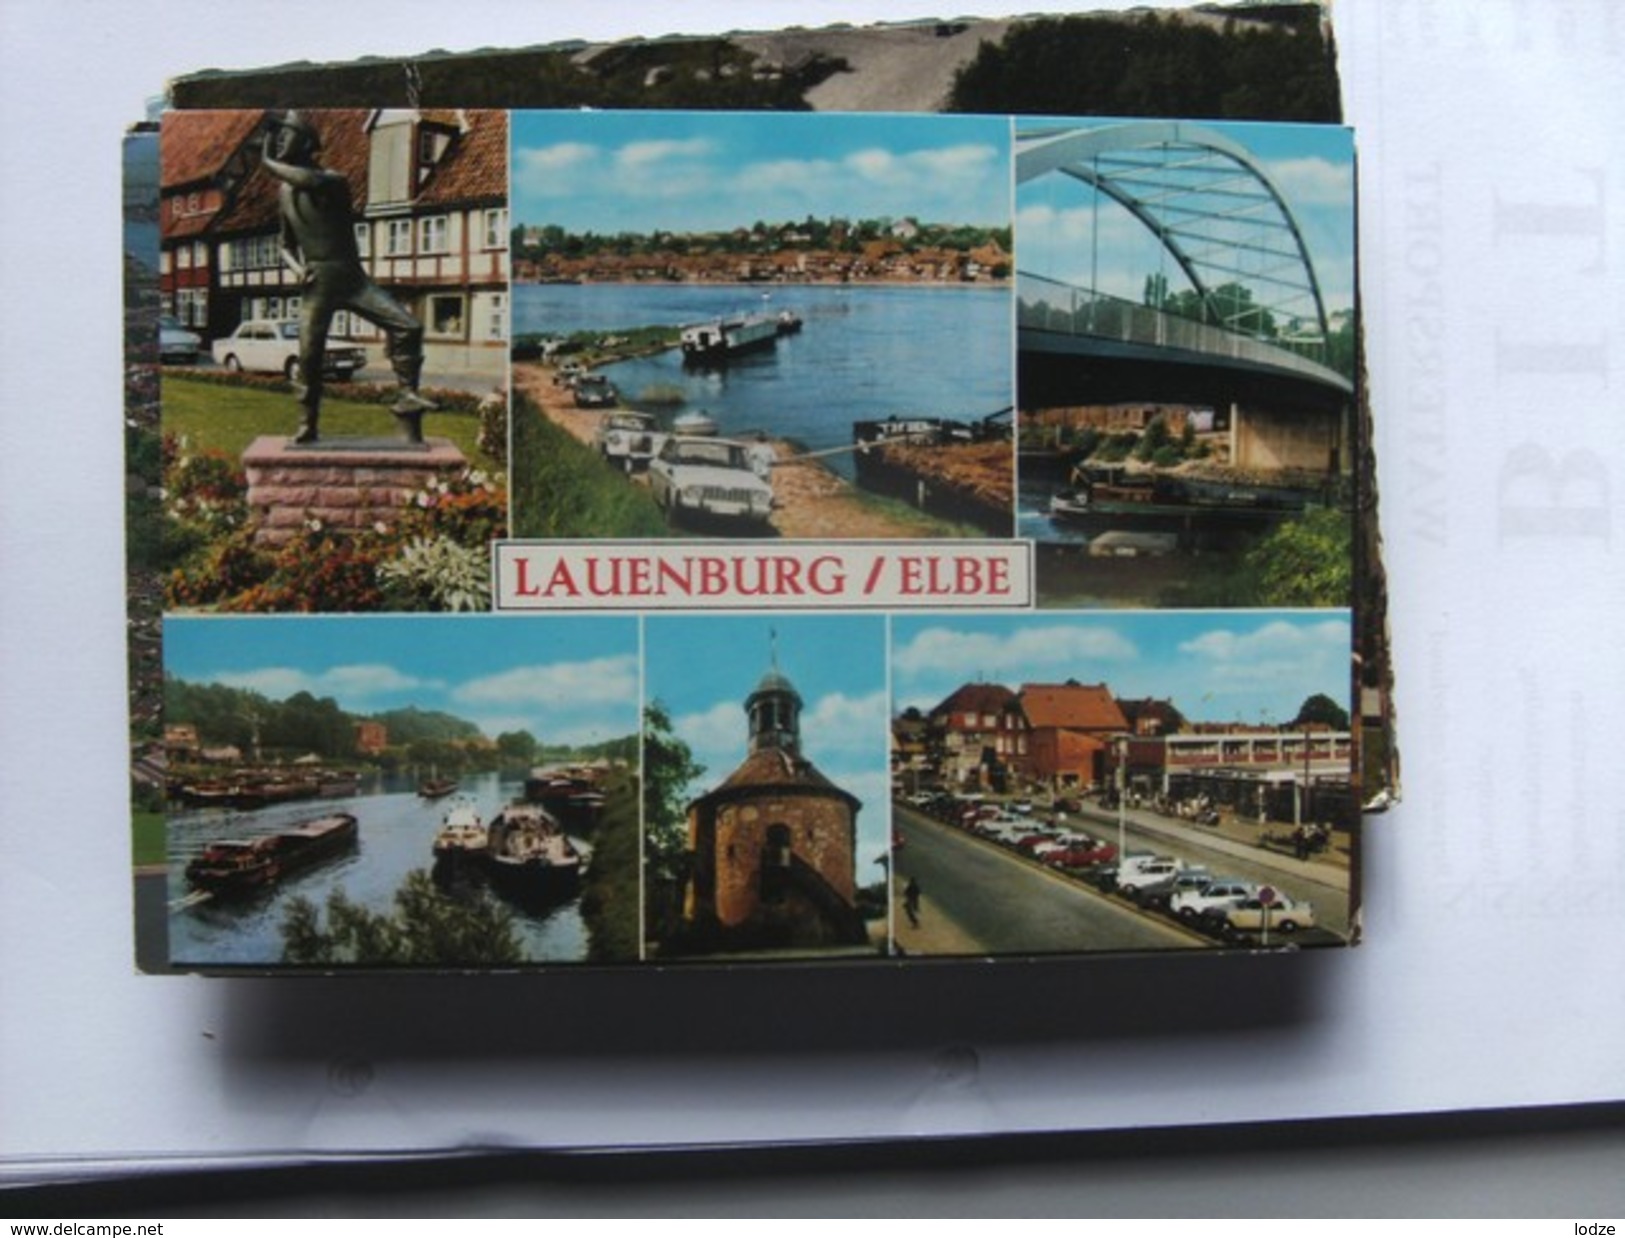 Duitsland Deutschland Schleswig Holstein Lauenburg Elbe - Lauenburg